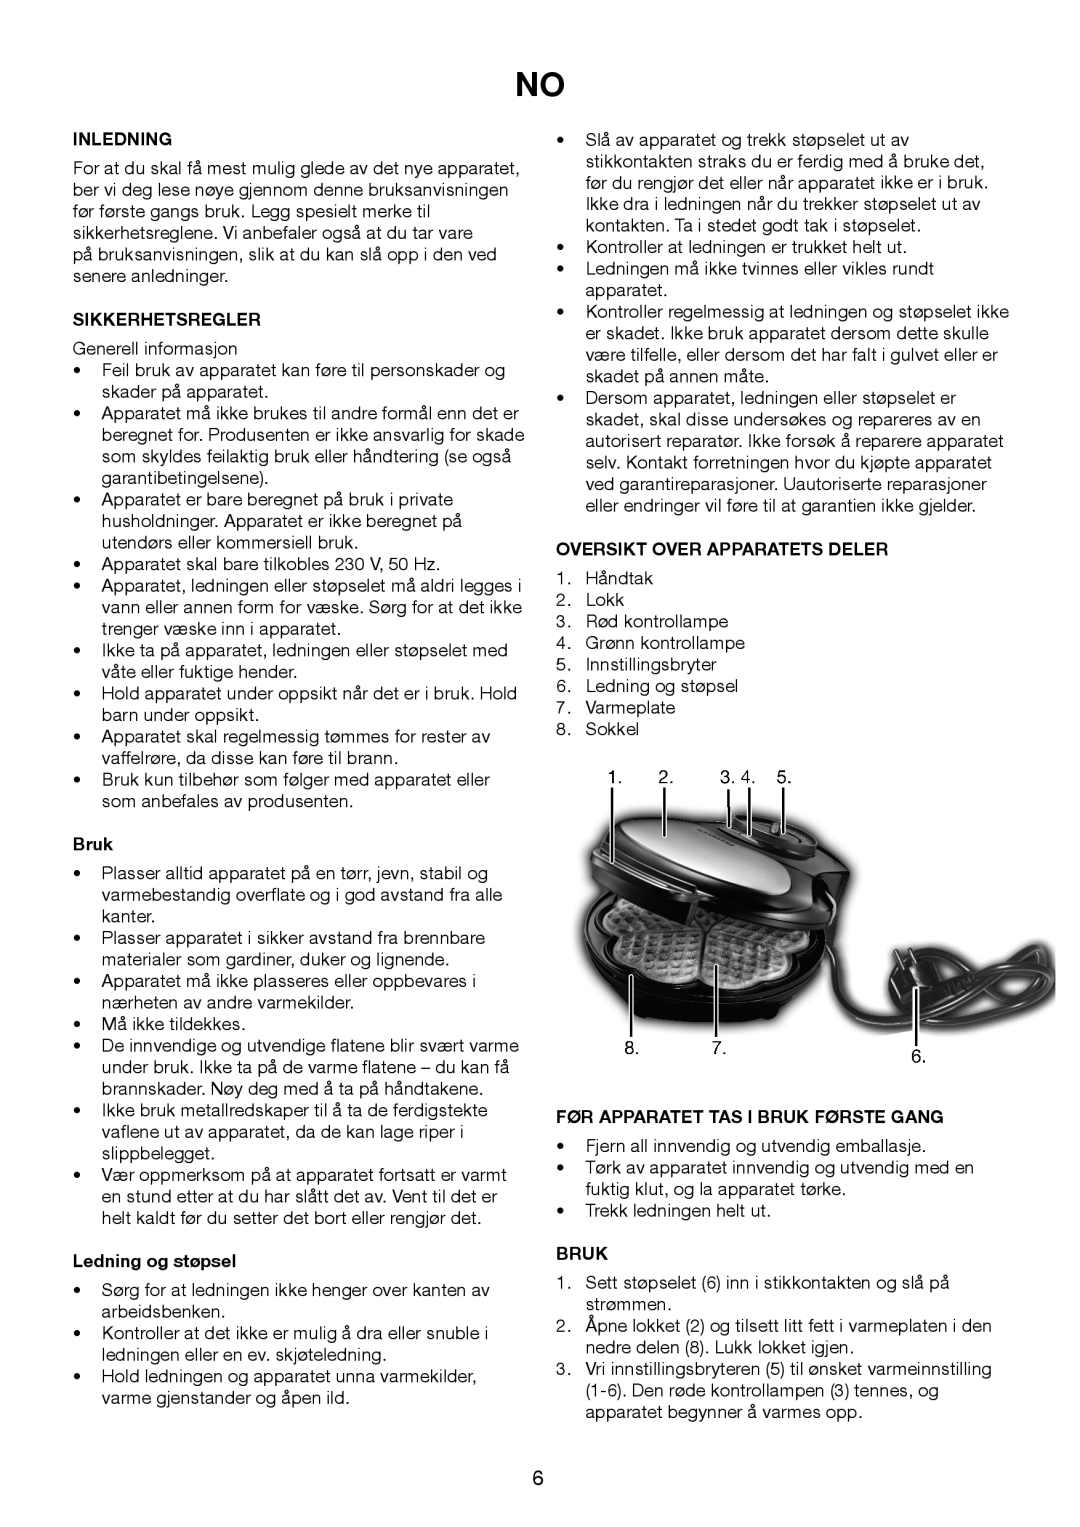 Melissa 643-194 manual Inledning, Sikkerhetsregler, Bruk, Ledning og støpsel, Oversikt Over Apparatets Deler 